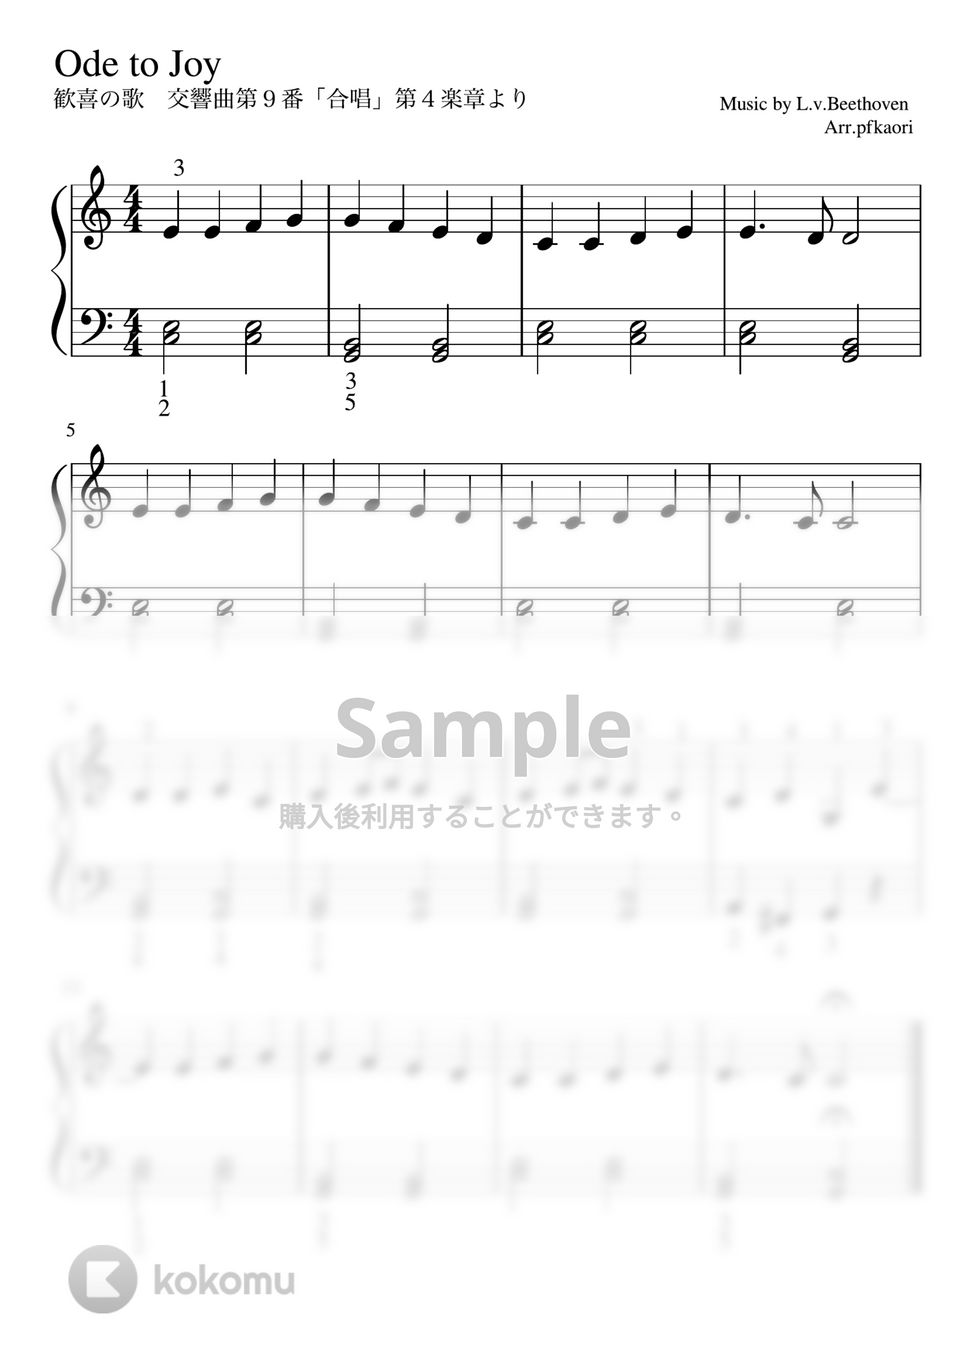 ベートーヴェン - 歓喜の歌 (Cdur・ピアノソロ初級) by pfkaori